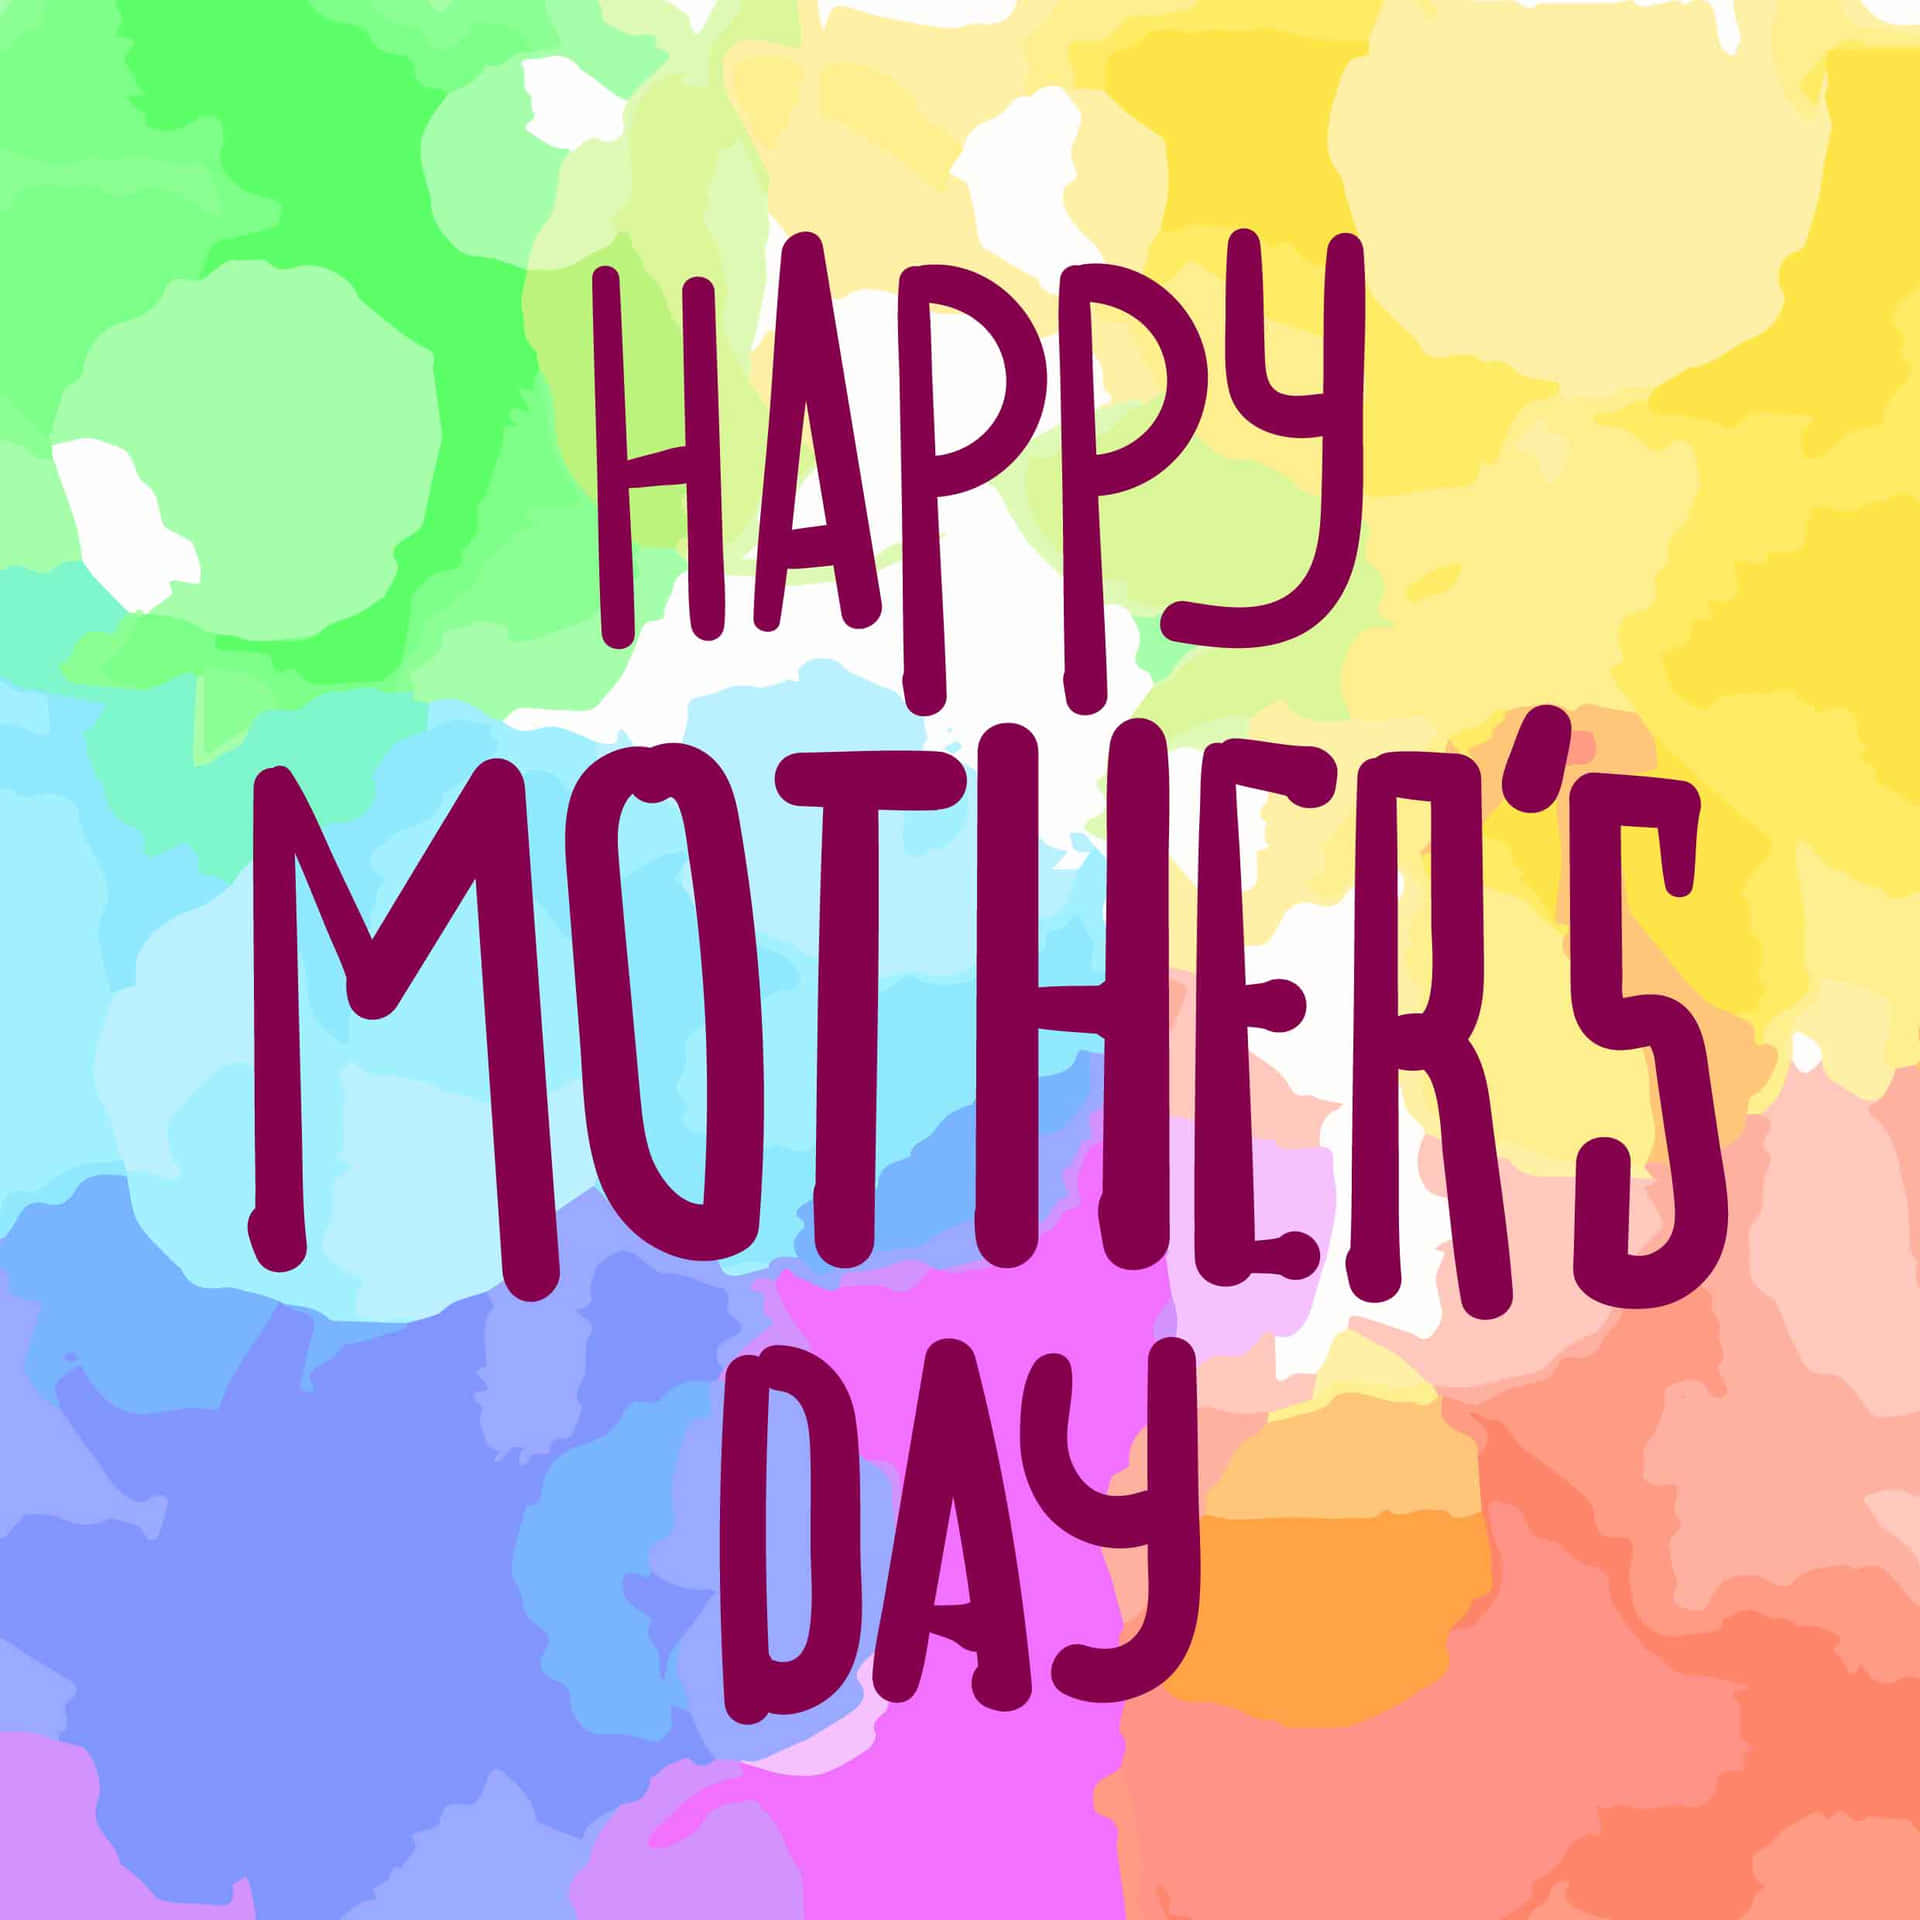 Tarjetade Felicitaciones Para El Día De Las Madres Con Un Fondo Colorido.